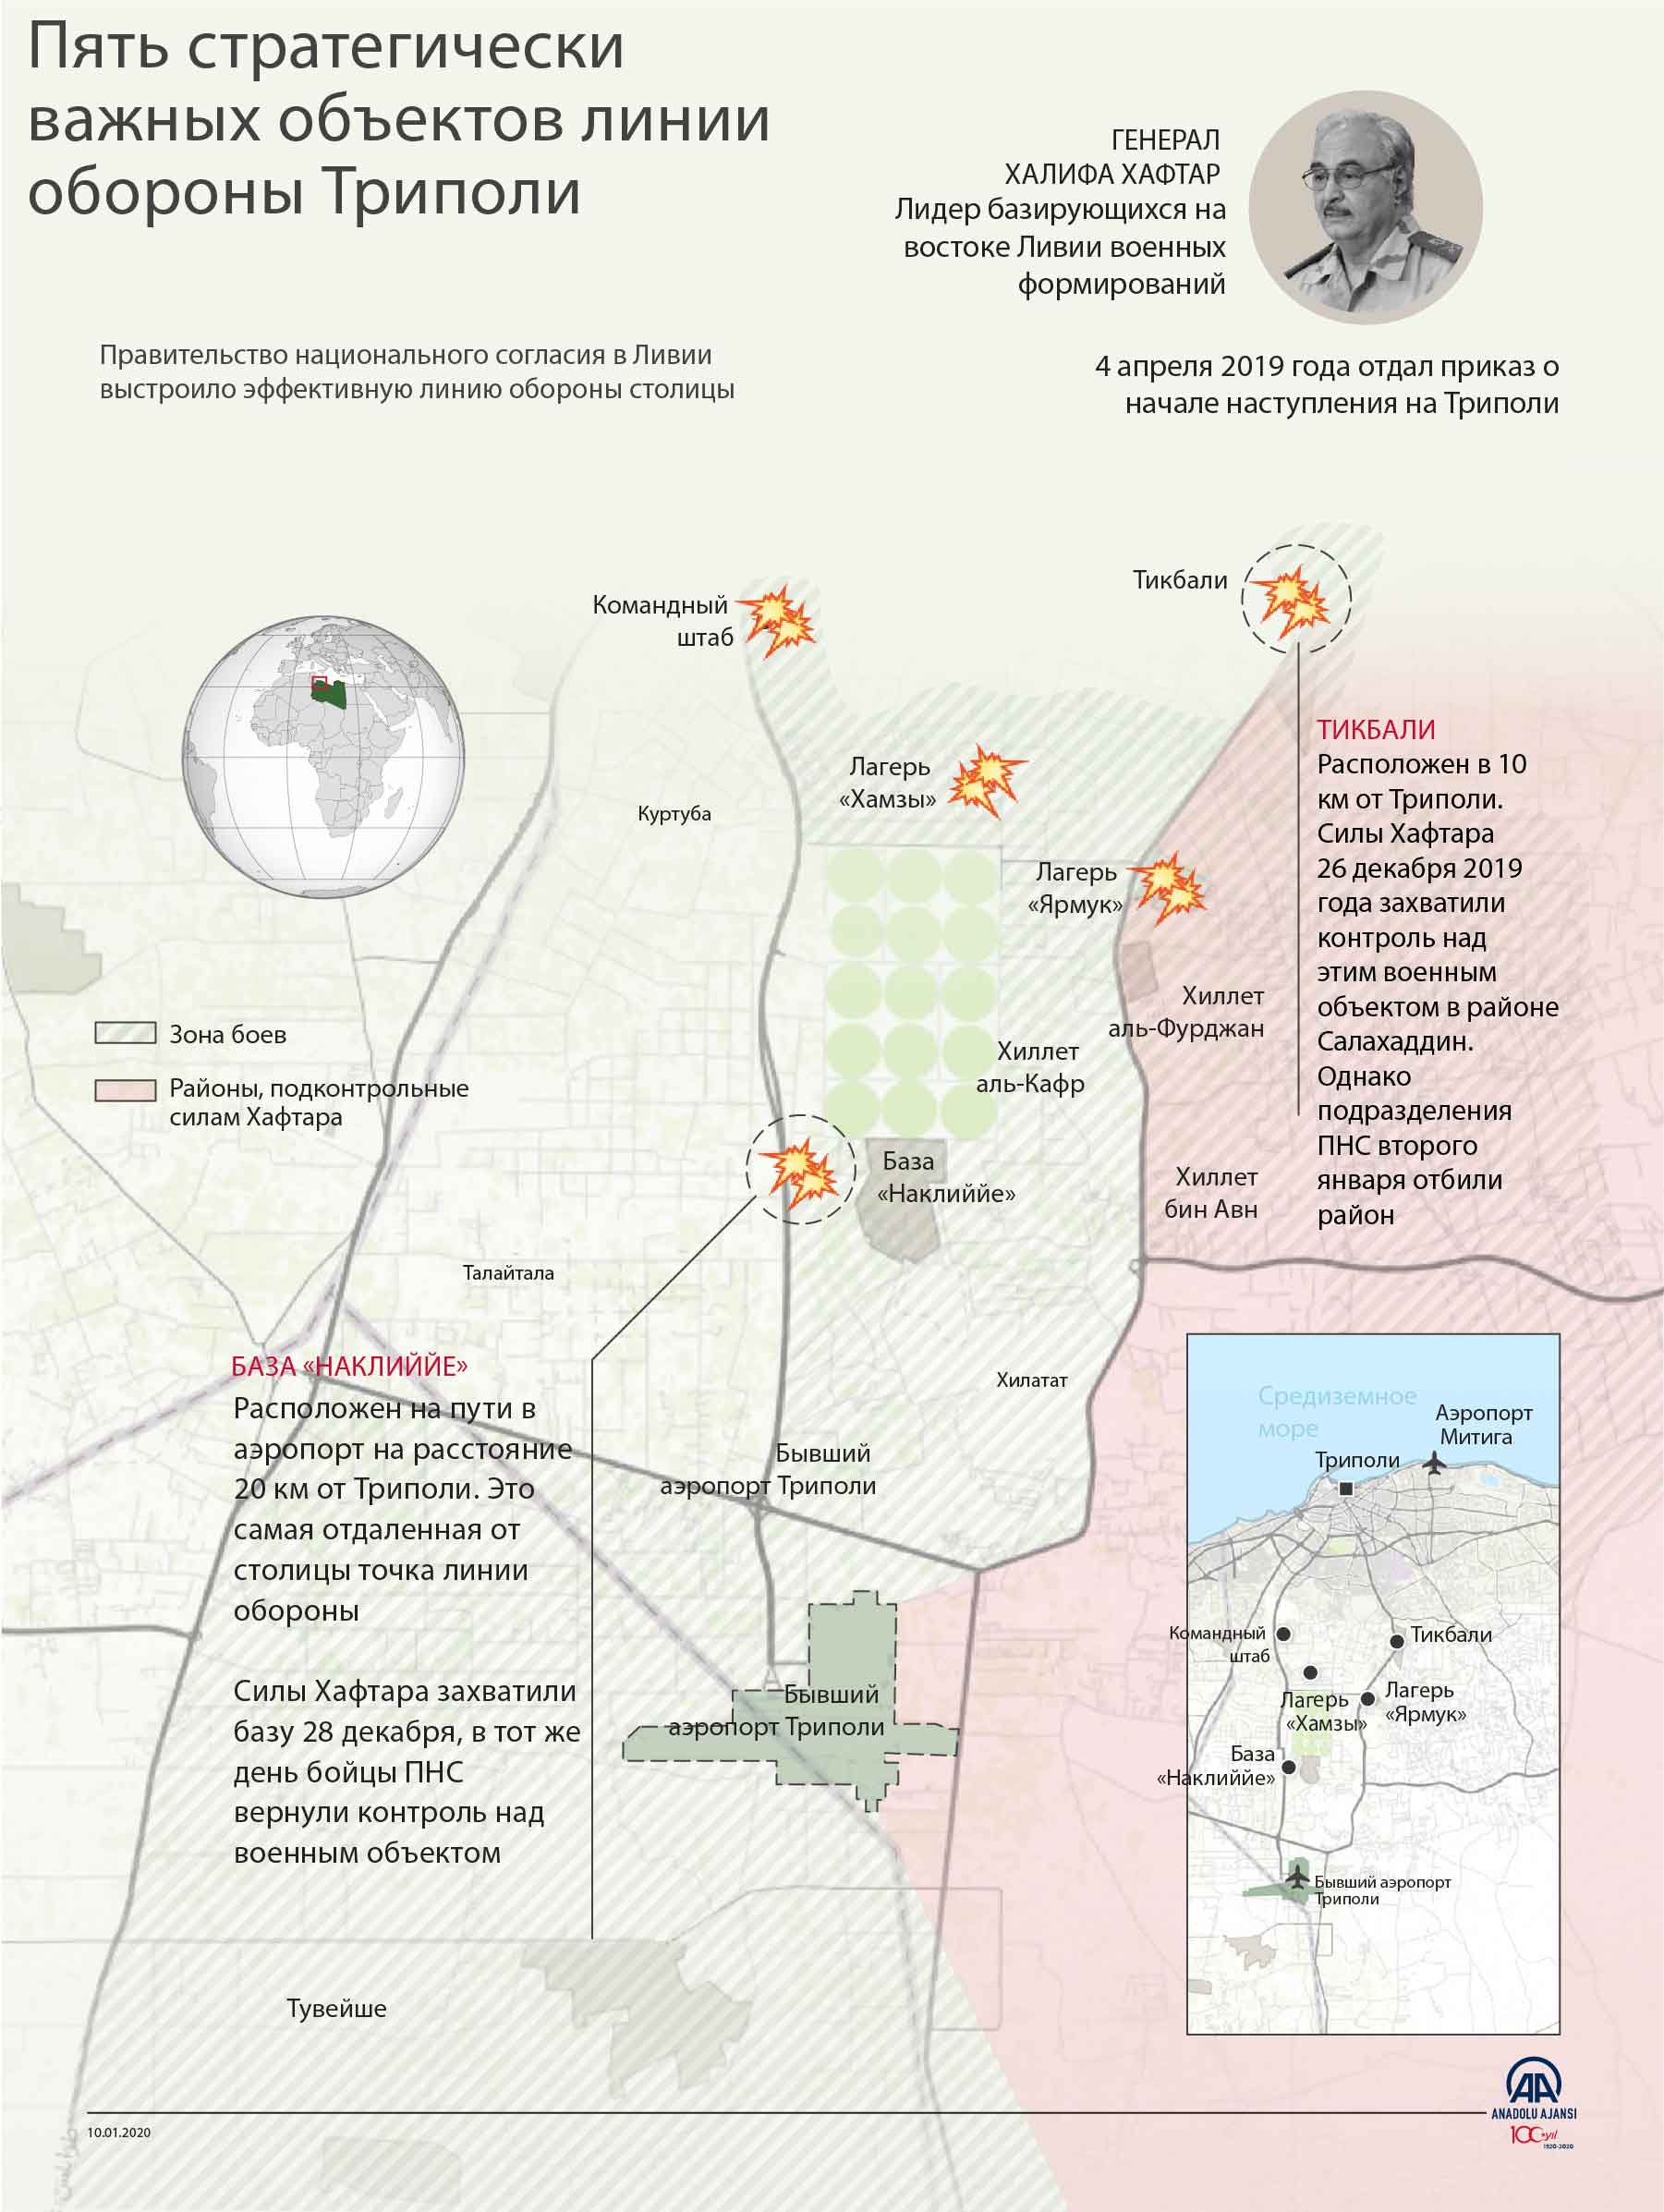 Пять стратегически важных объектов линии обороны Триполи